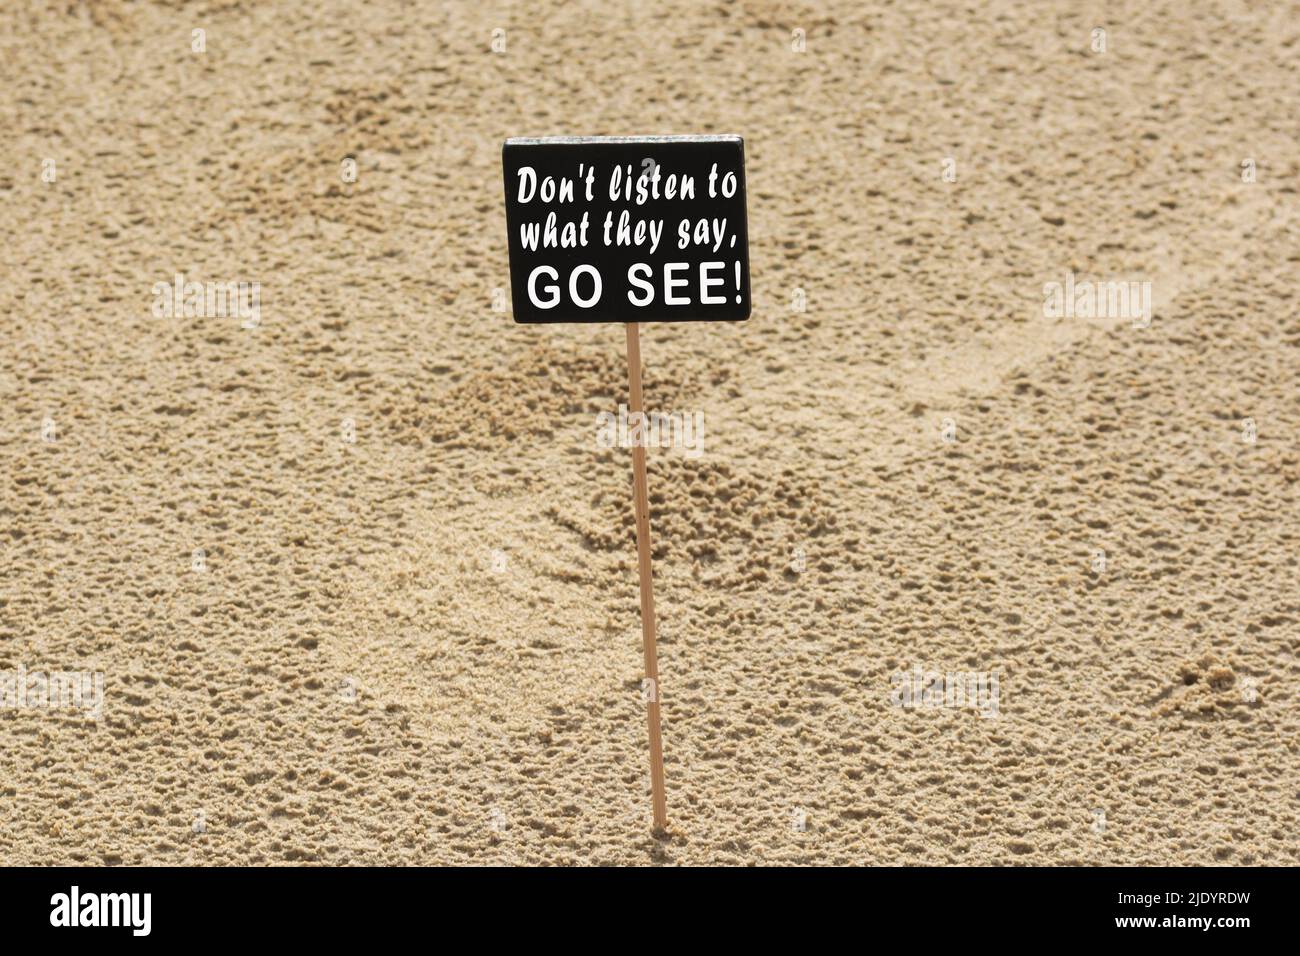 Motivierendes Zitat auf einer Tafel mit Hintergrund zum Sandstrand – hören Sie nicht zu, was sie sagen, sondern sehen Sie es sich an. Stockfoto